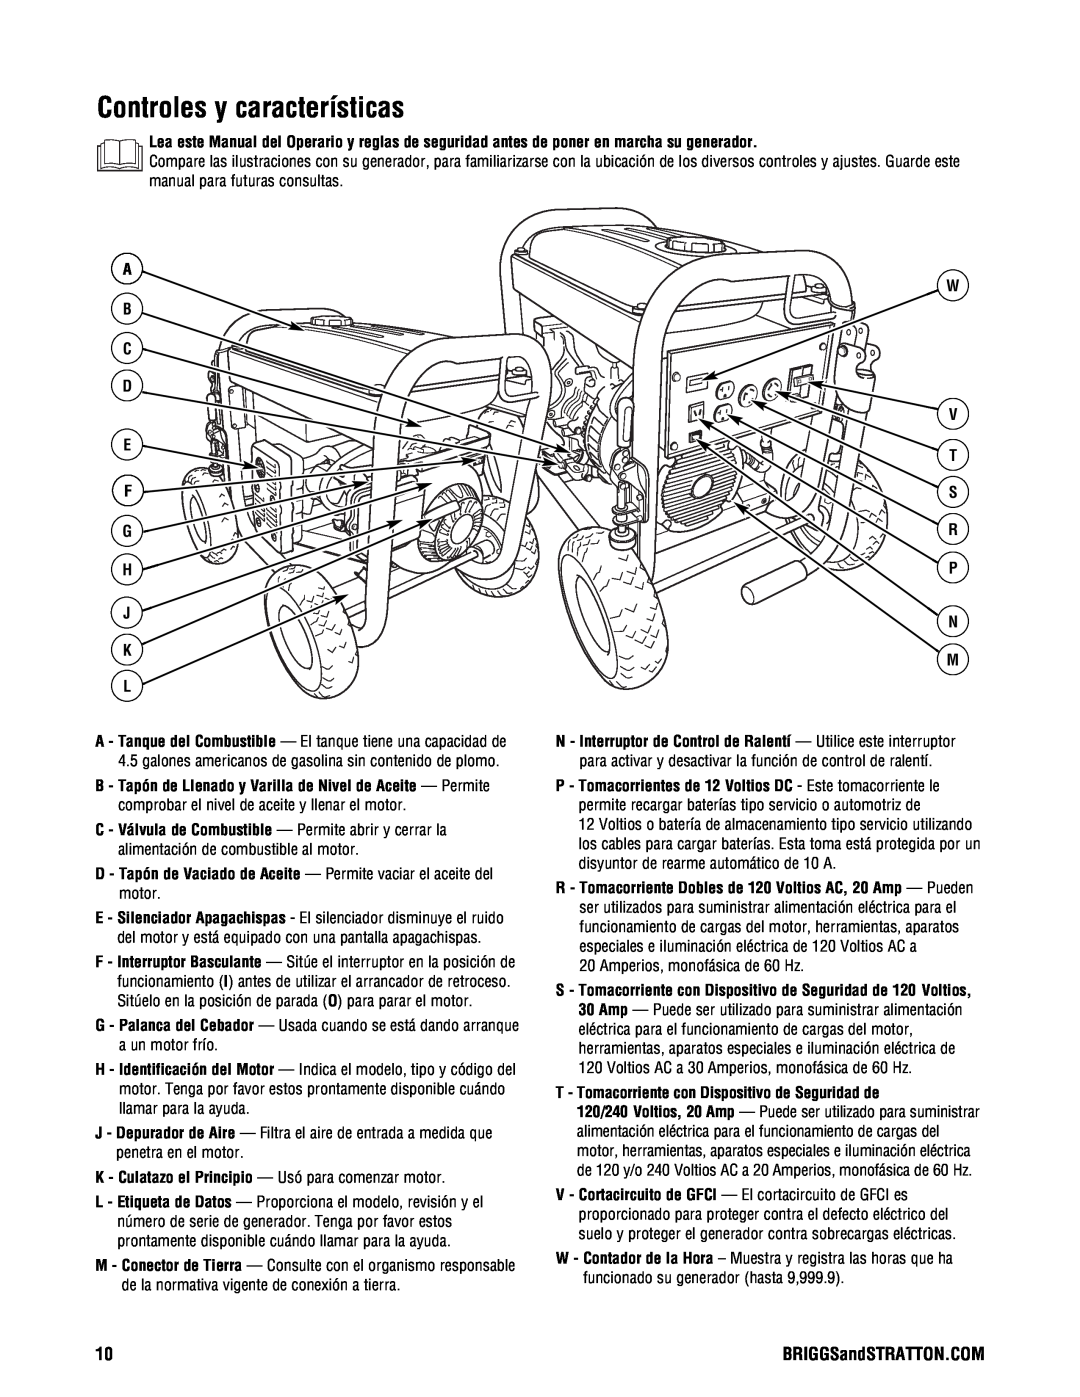 Briggs & Stratton PRO4000 manual Controles y características, A B C D E F G H J K L, W V T S R P N M 